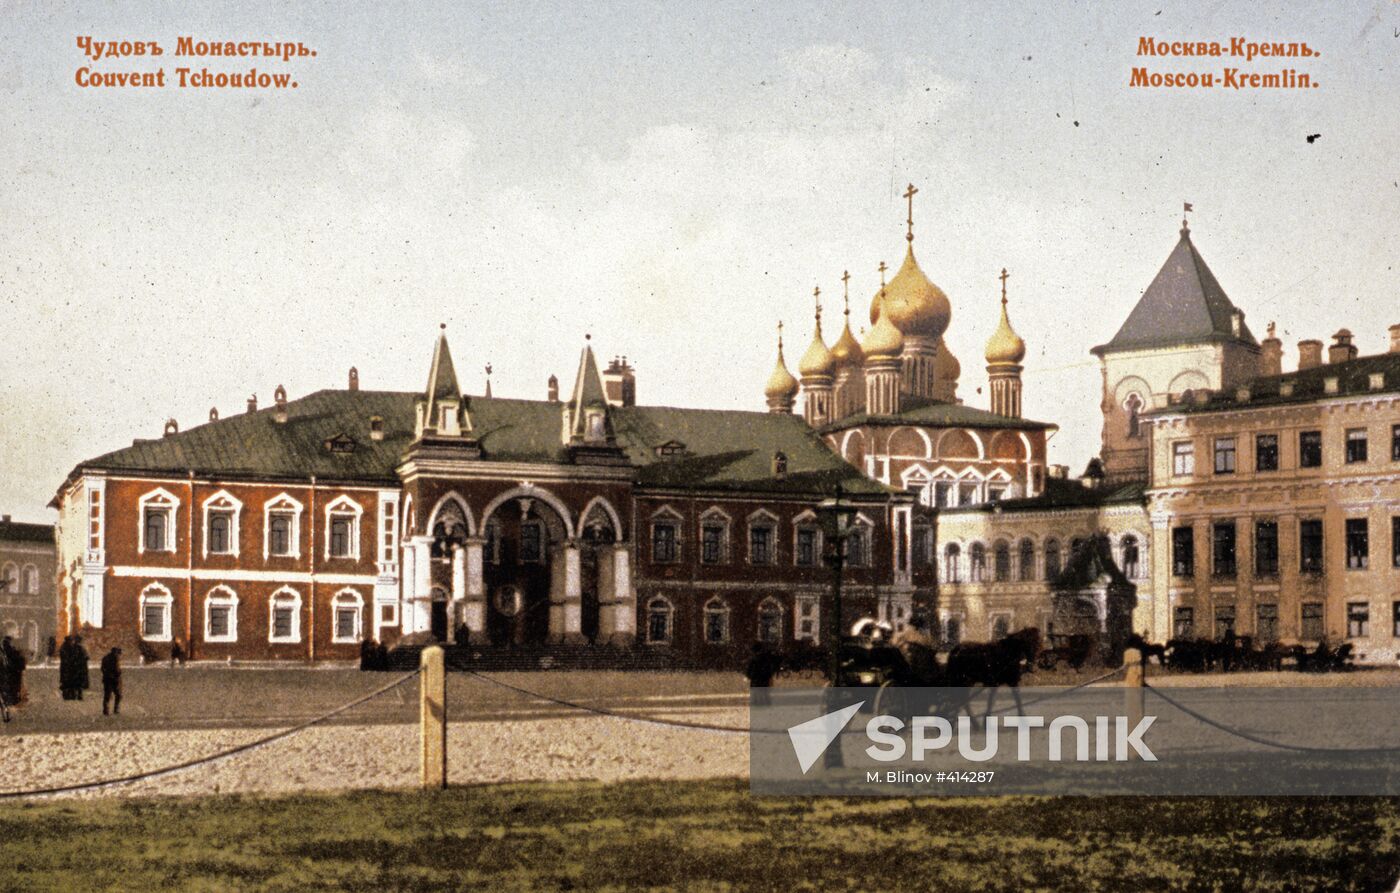 Chudov Monastery